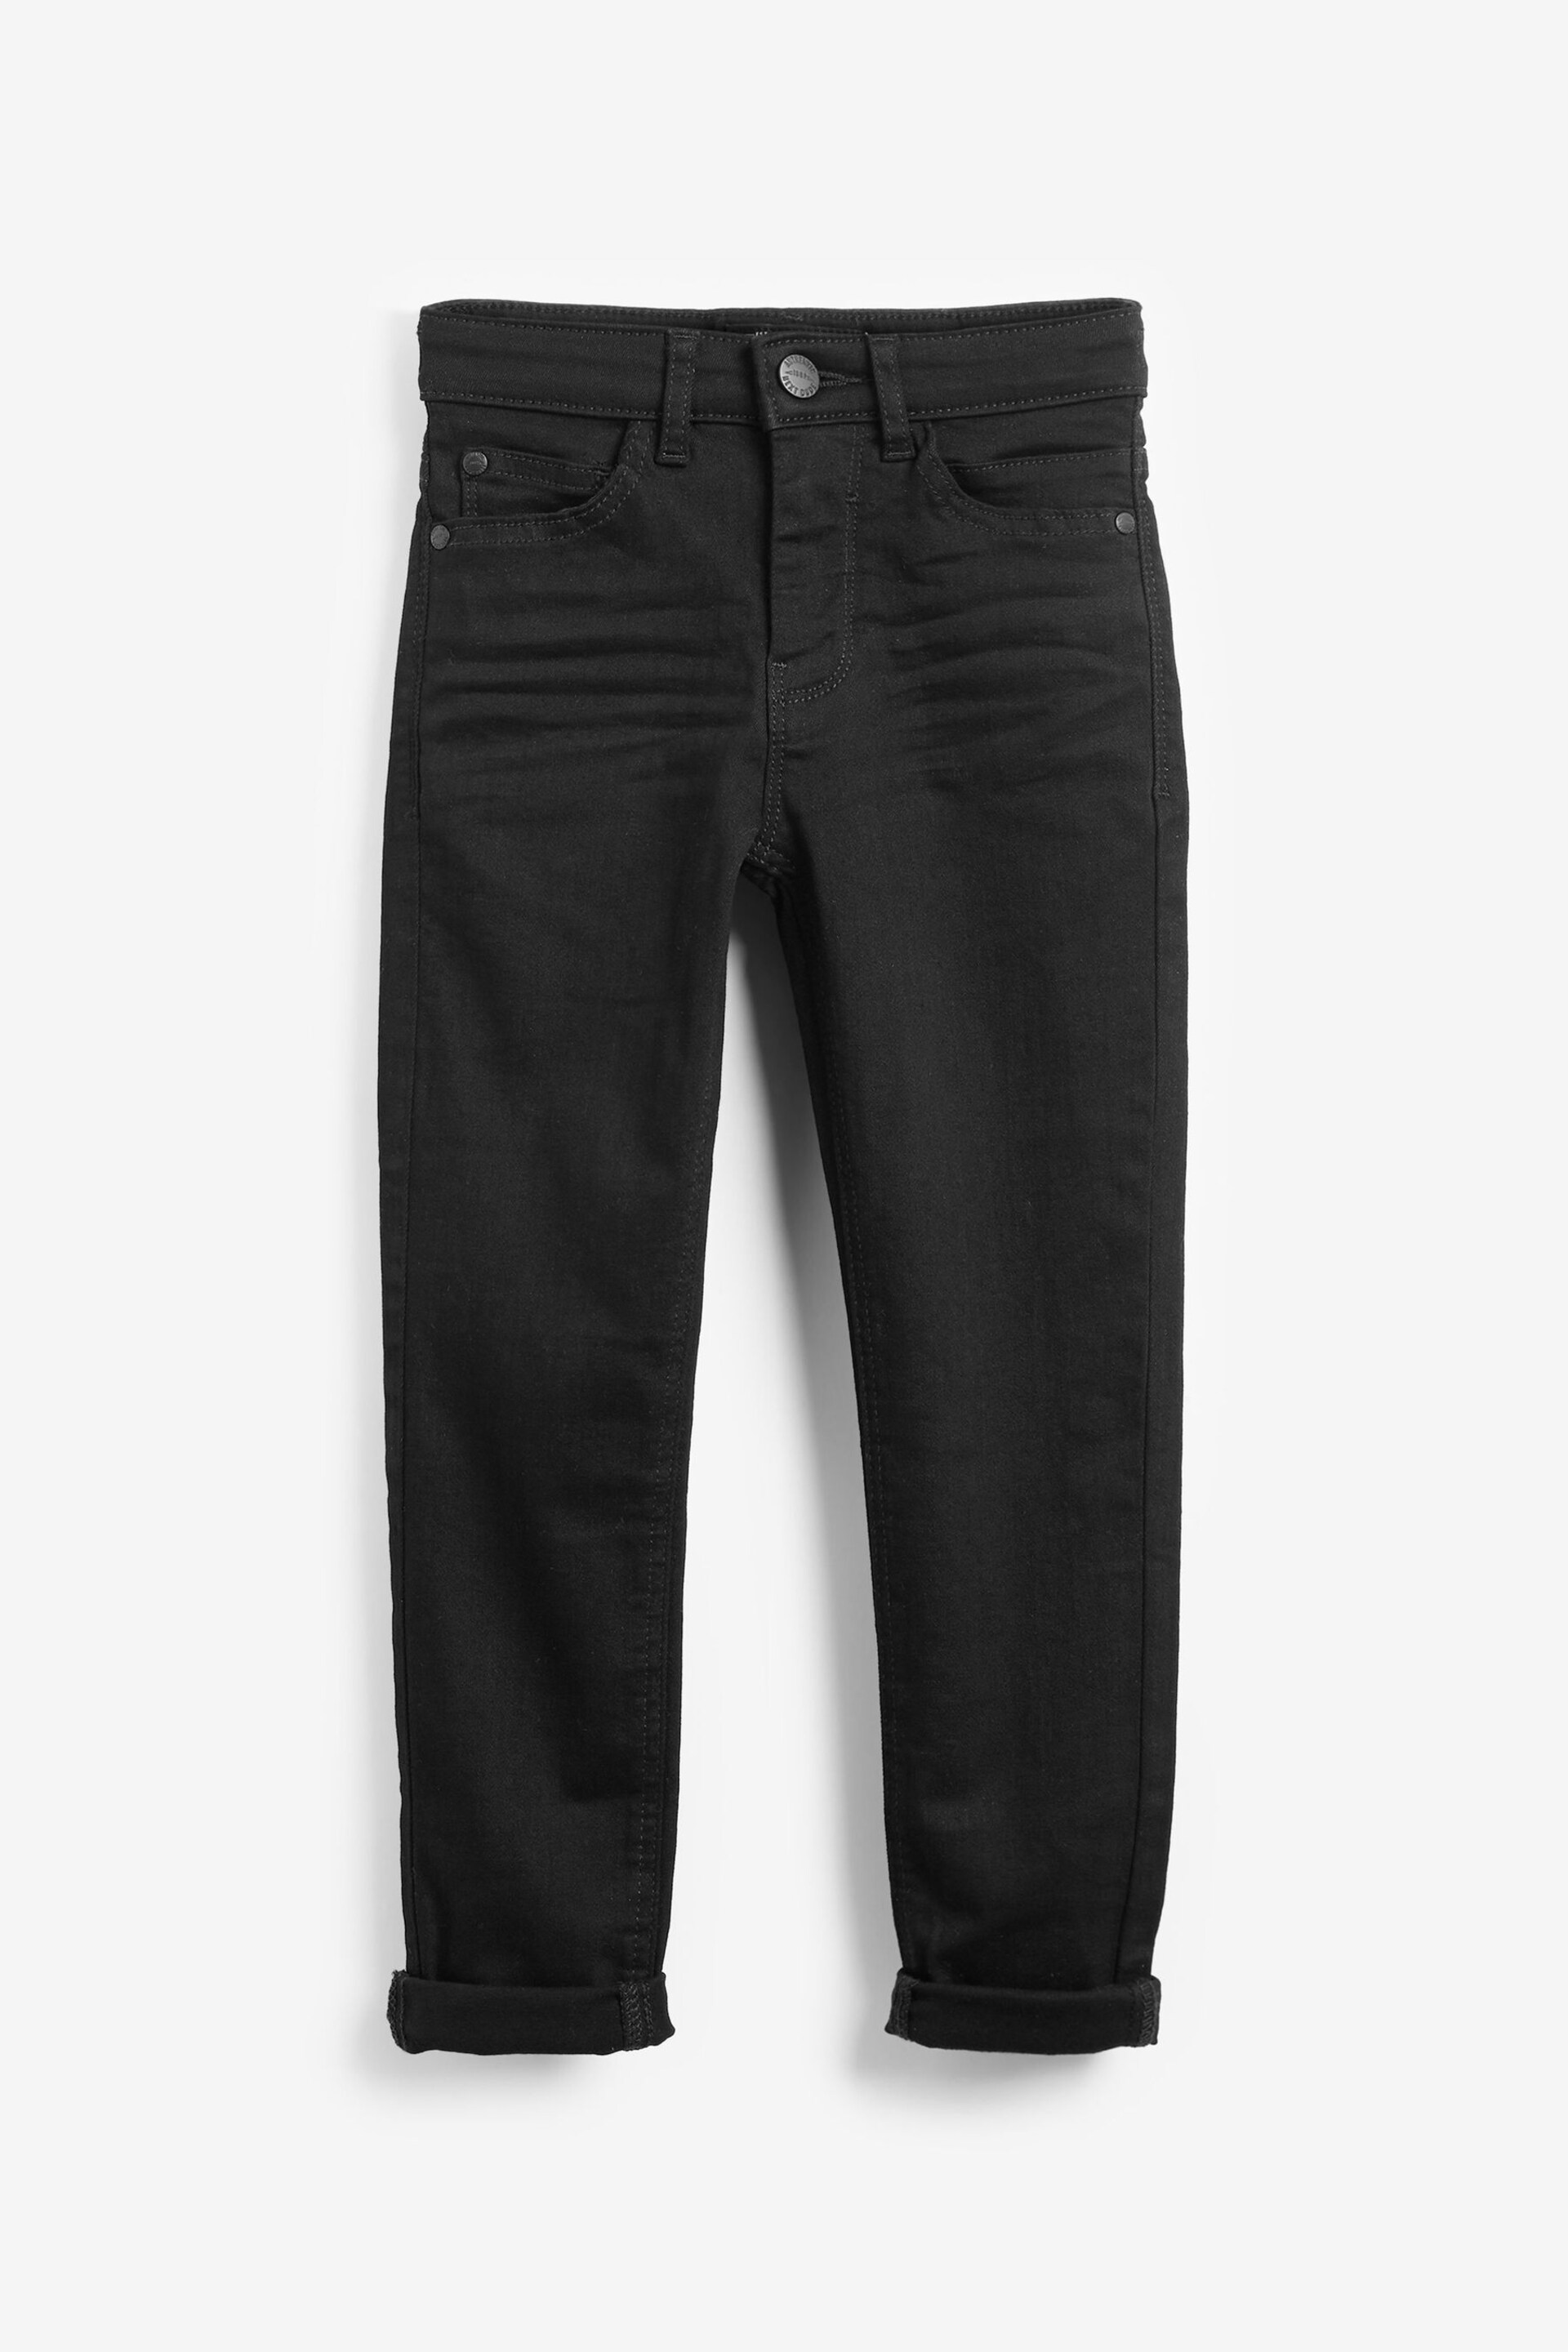 Black Denim Super Skinny Fit Mega Stretch Adjustable Waist Jeans (3-16yrs) - Image 4 of 6